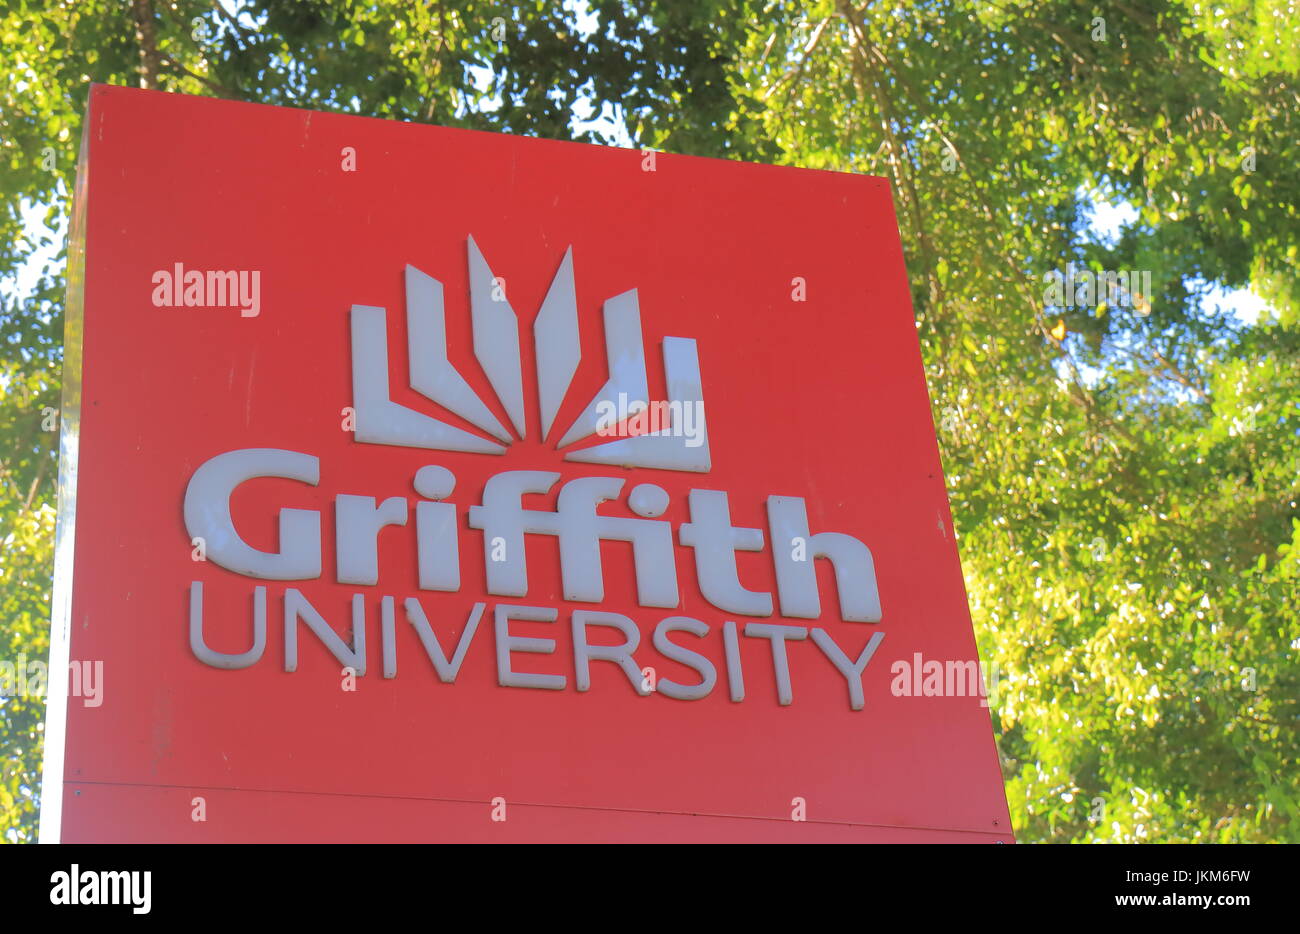 L'Université Griffith à Brisbane en Australie. Griffith University est une université de recherche publique en Sud-Est du Queensland fondée en 1971. Banque D'Images